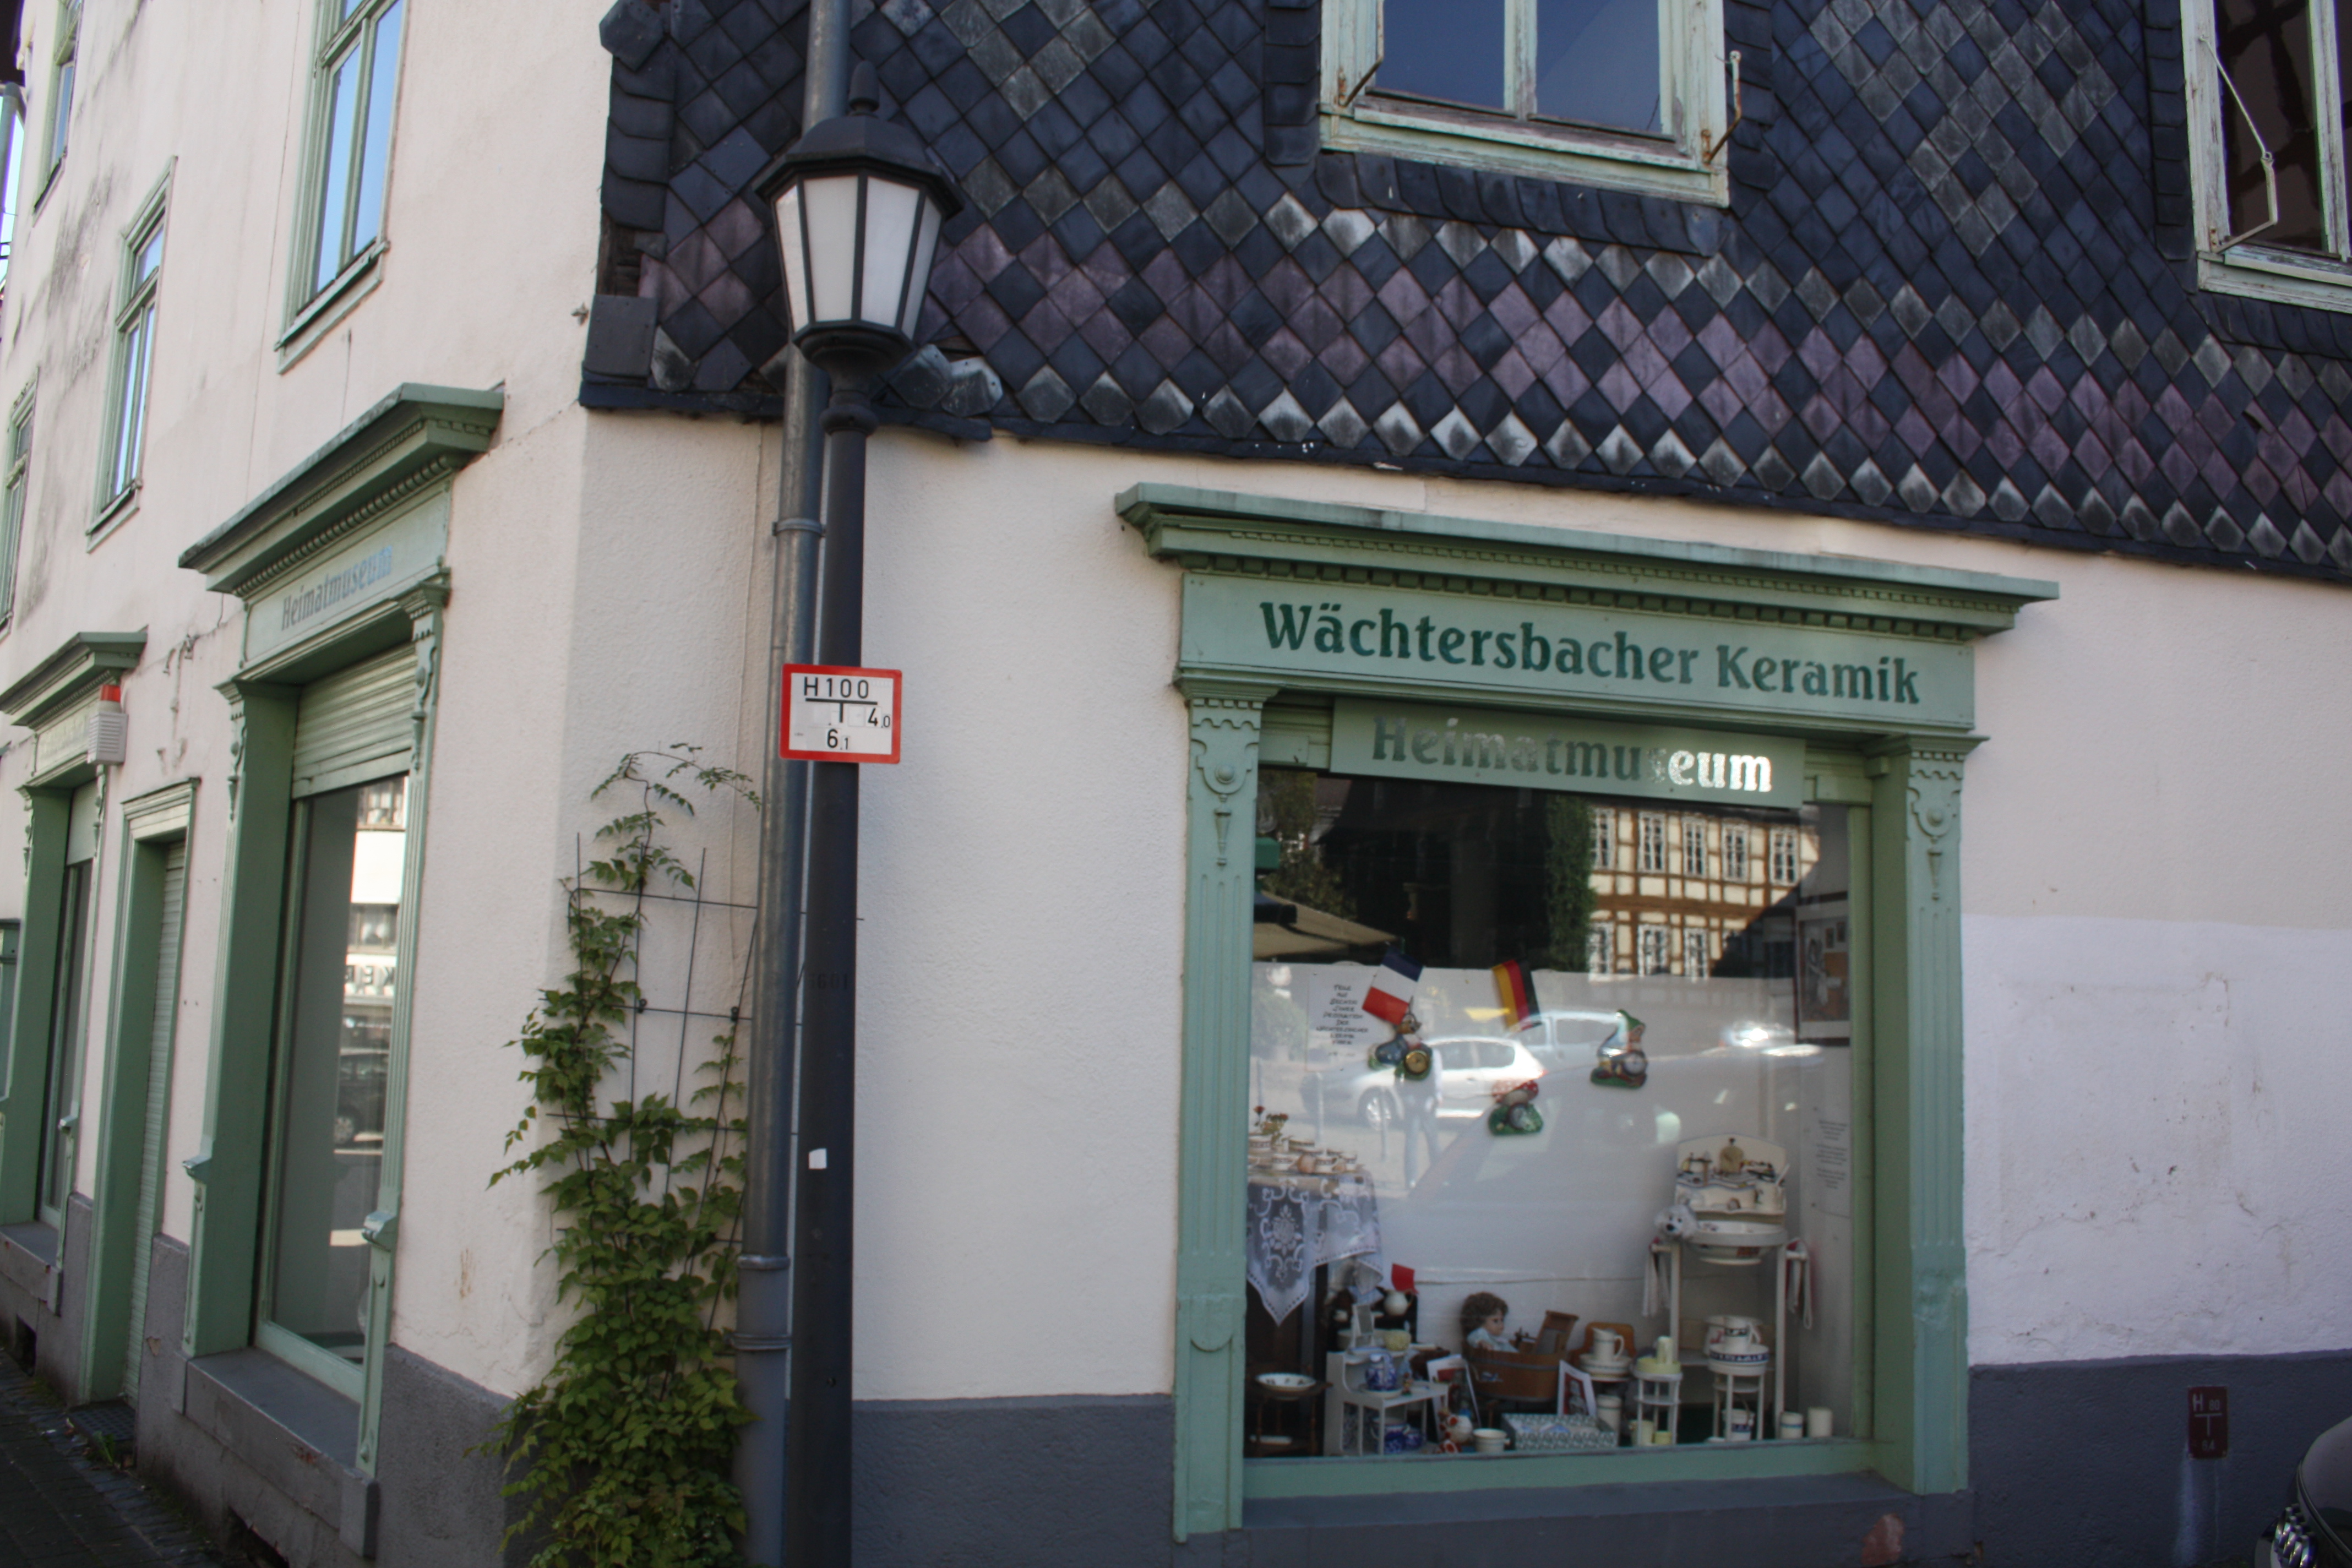 Das Heimatmuseum von Wächtersbach u.a. mit der Wächtersbacher Keramik.
